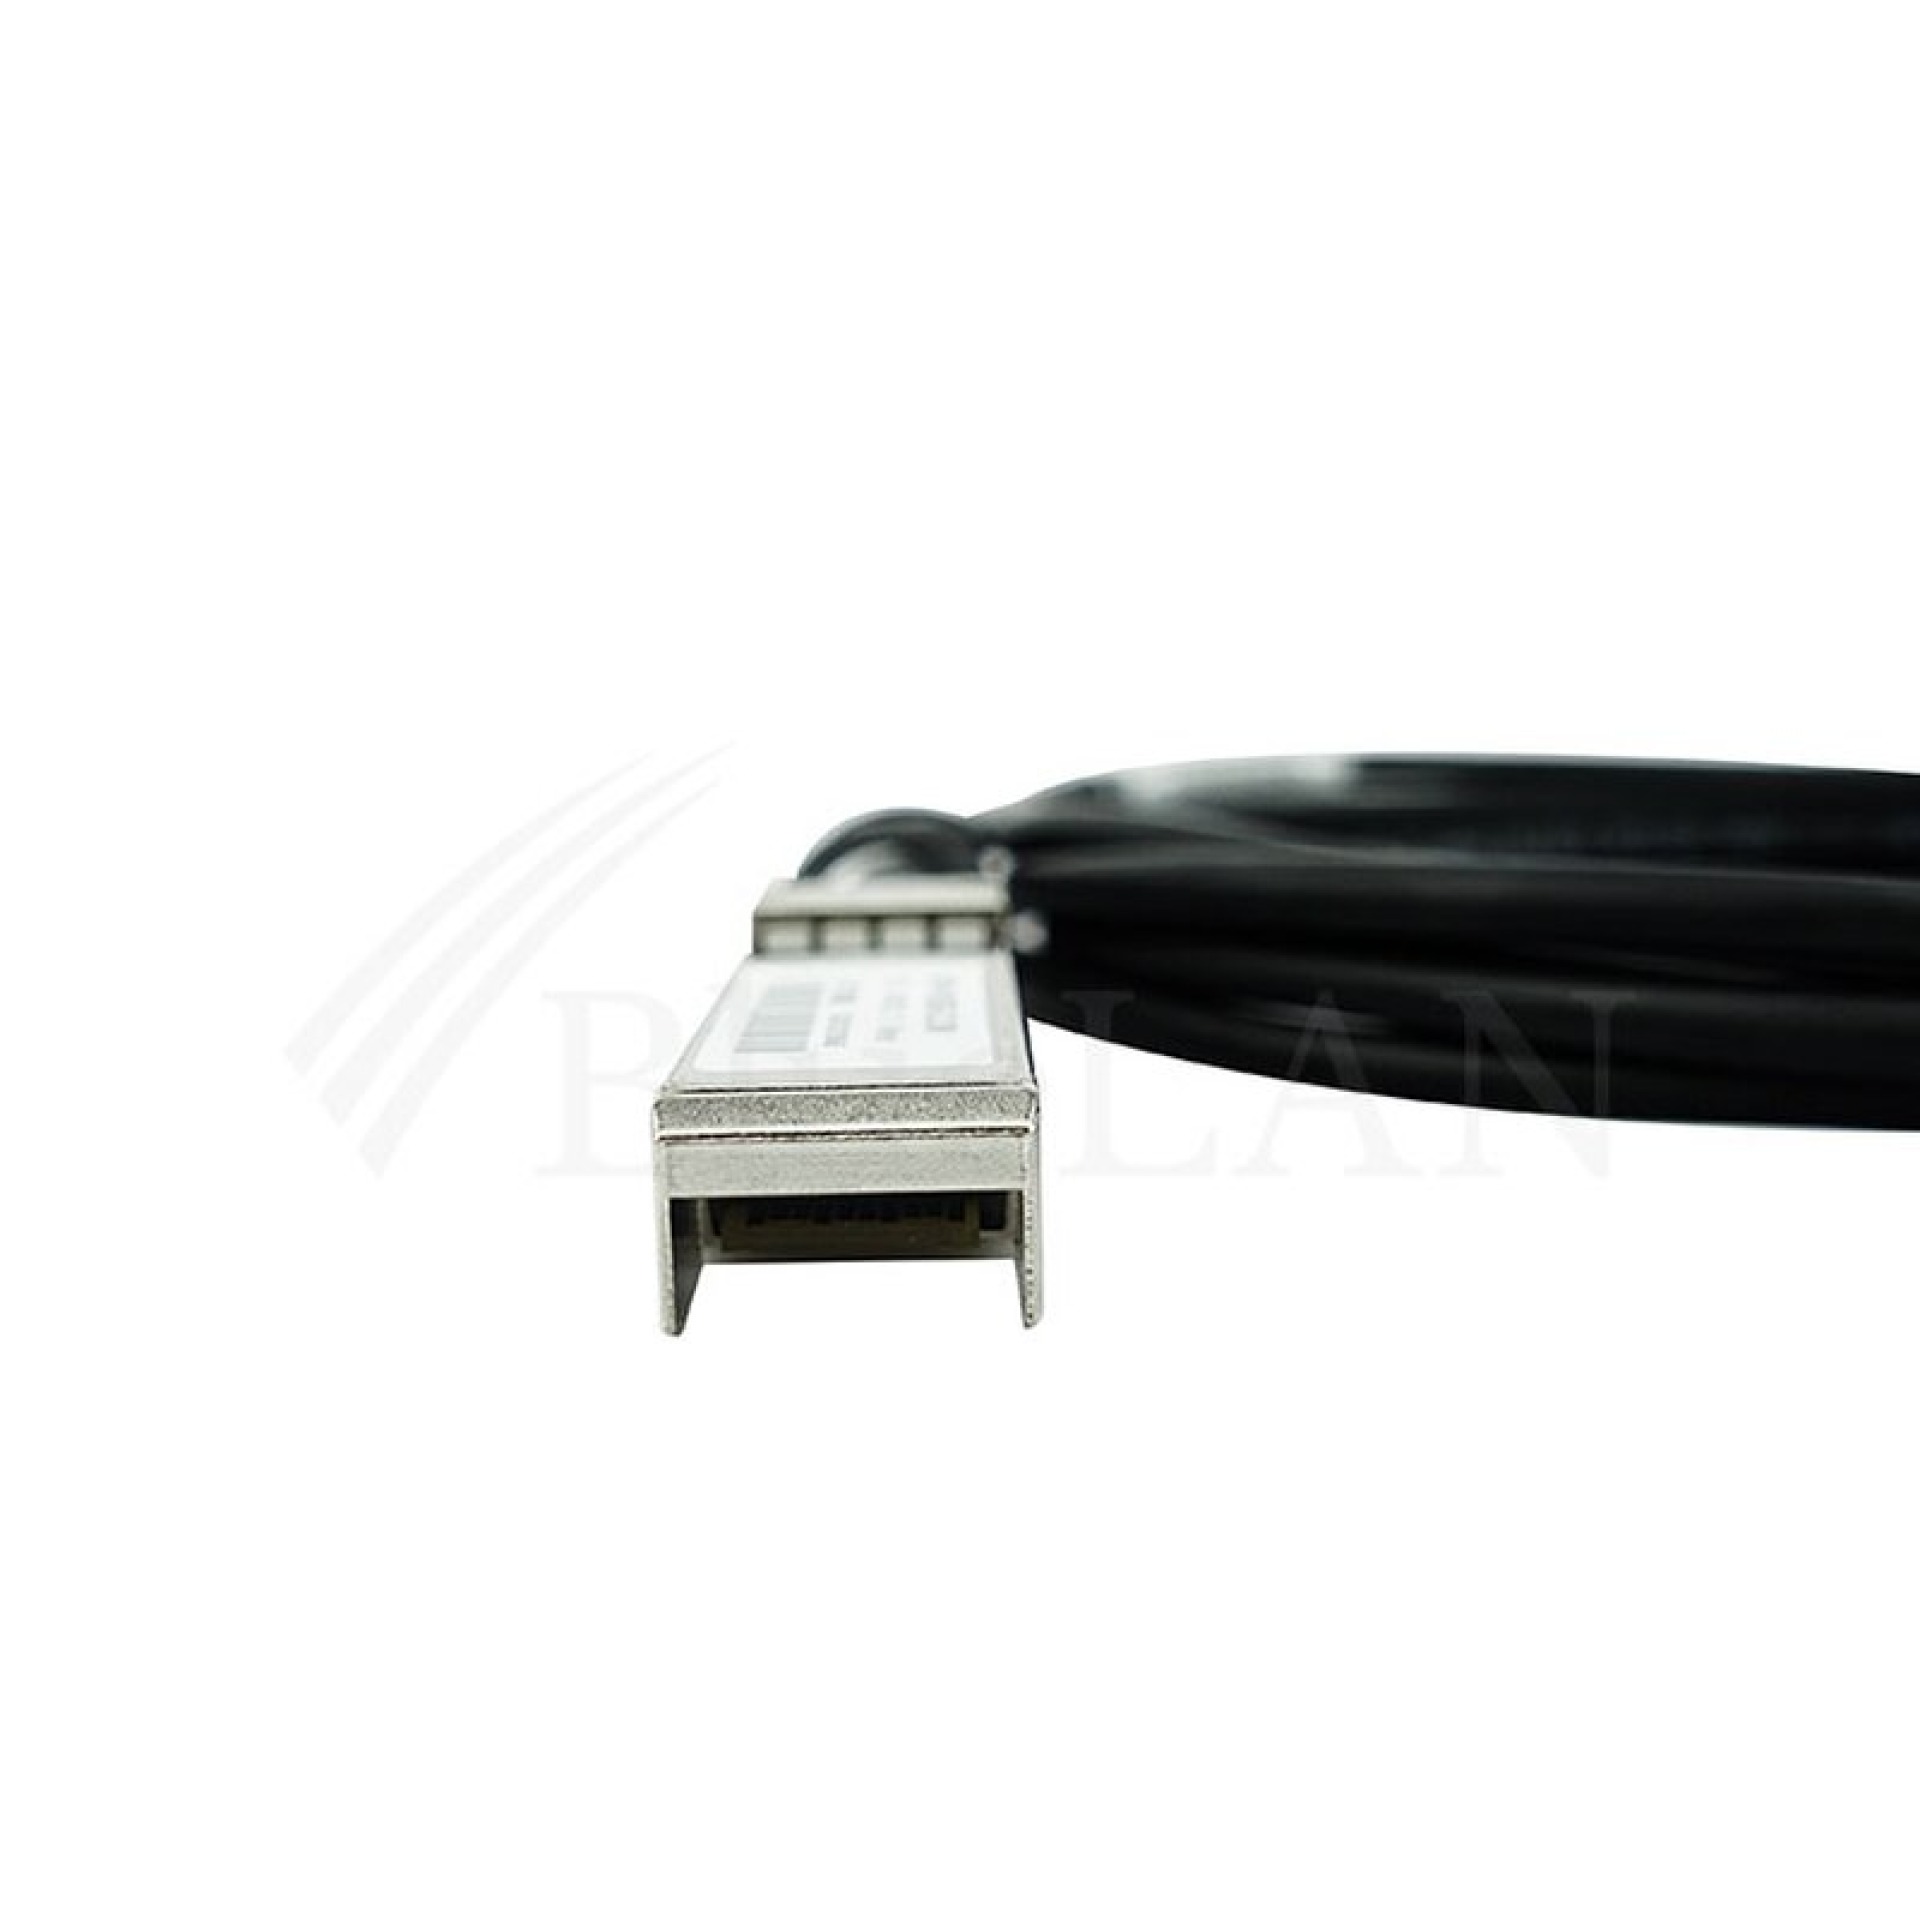 Extreme Networks 10521 compatible BlueLAN, DAC SFP28 SC272701Q3M26